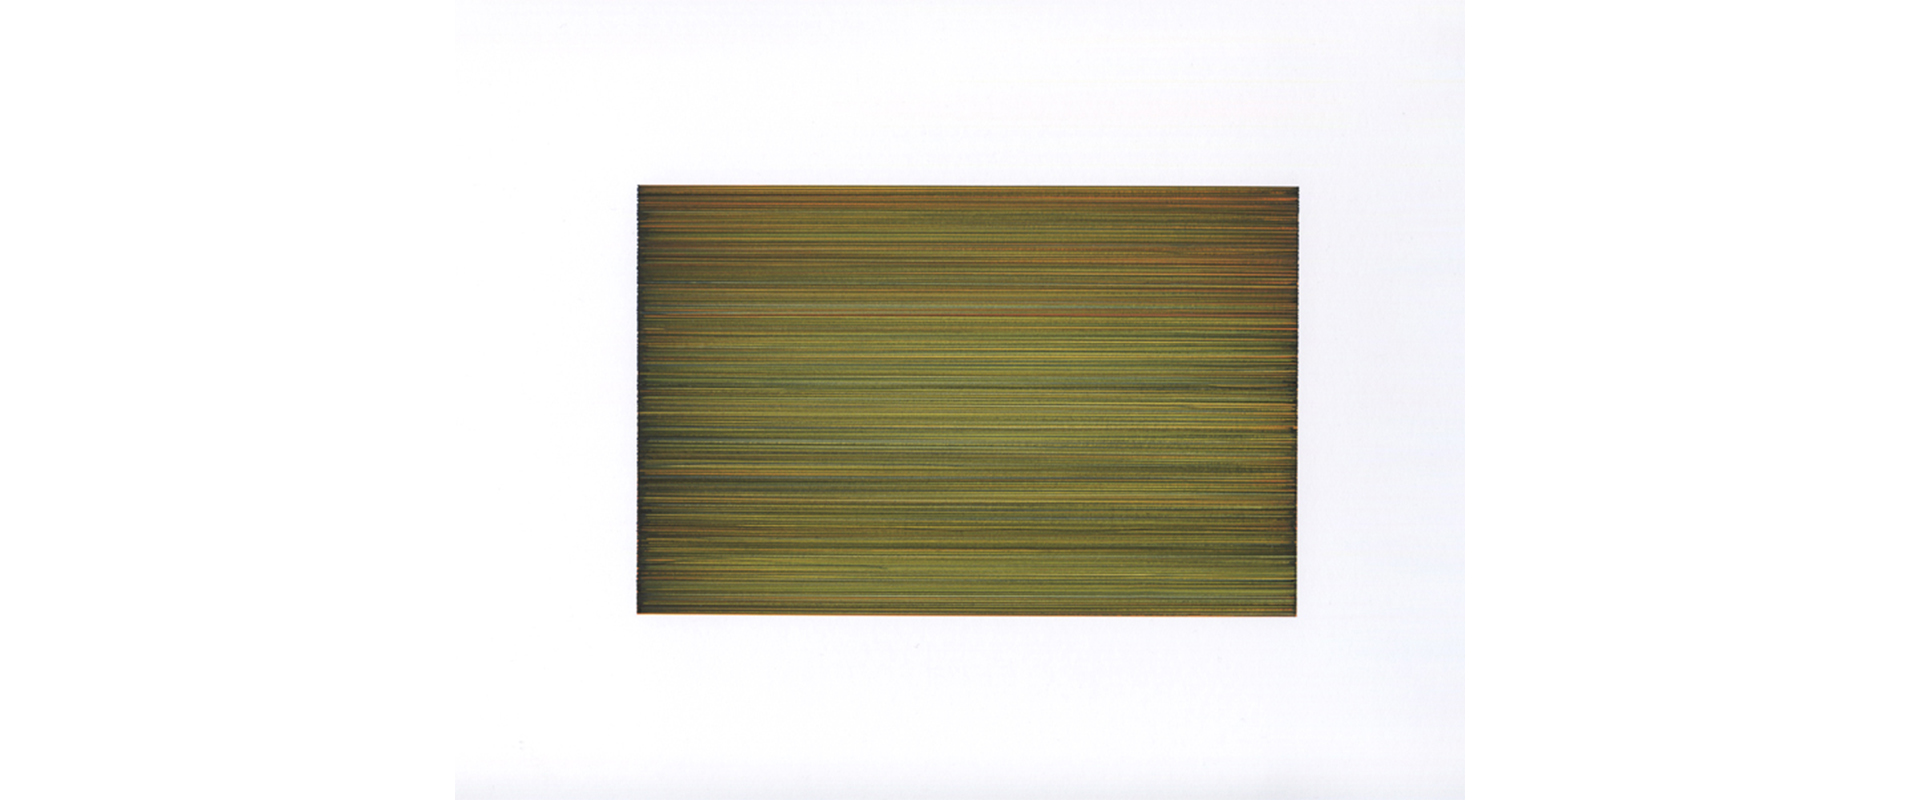 Ohne Titel (T-2016) – 2020, Farbige Tinte auf Papier, 11,5 x 17,5 cm (Blattgröße 42 x 29,7cm)